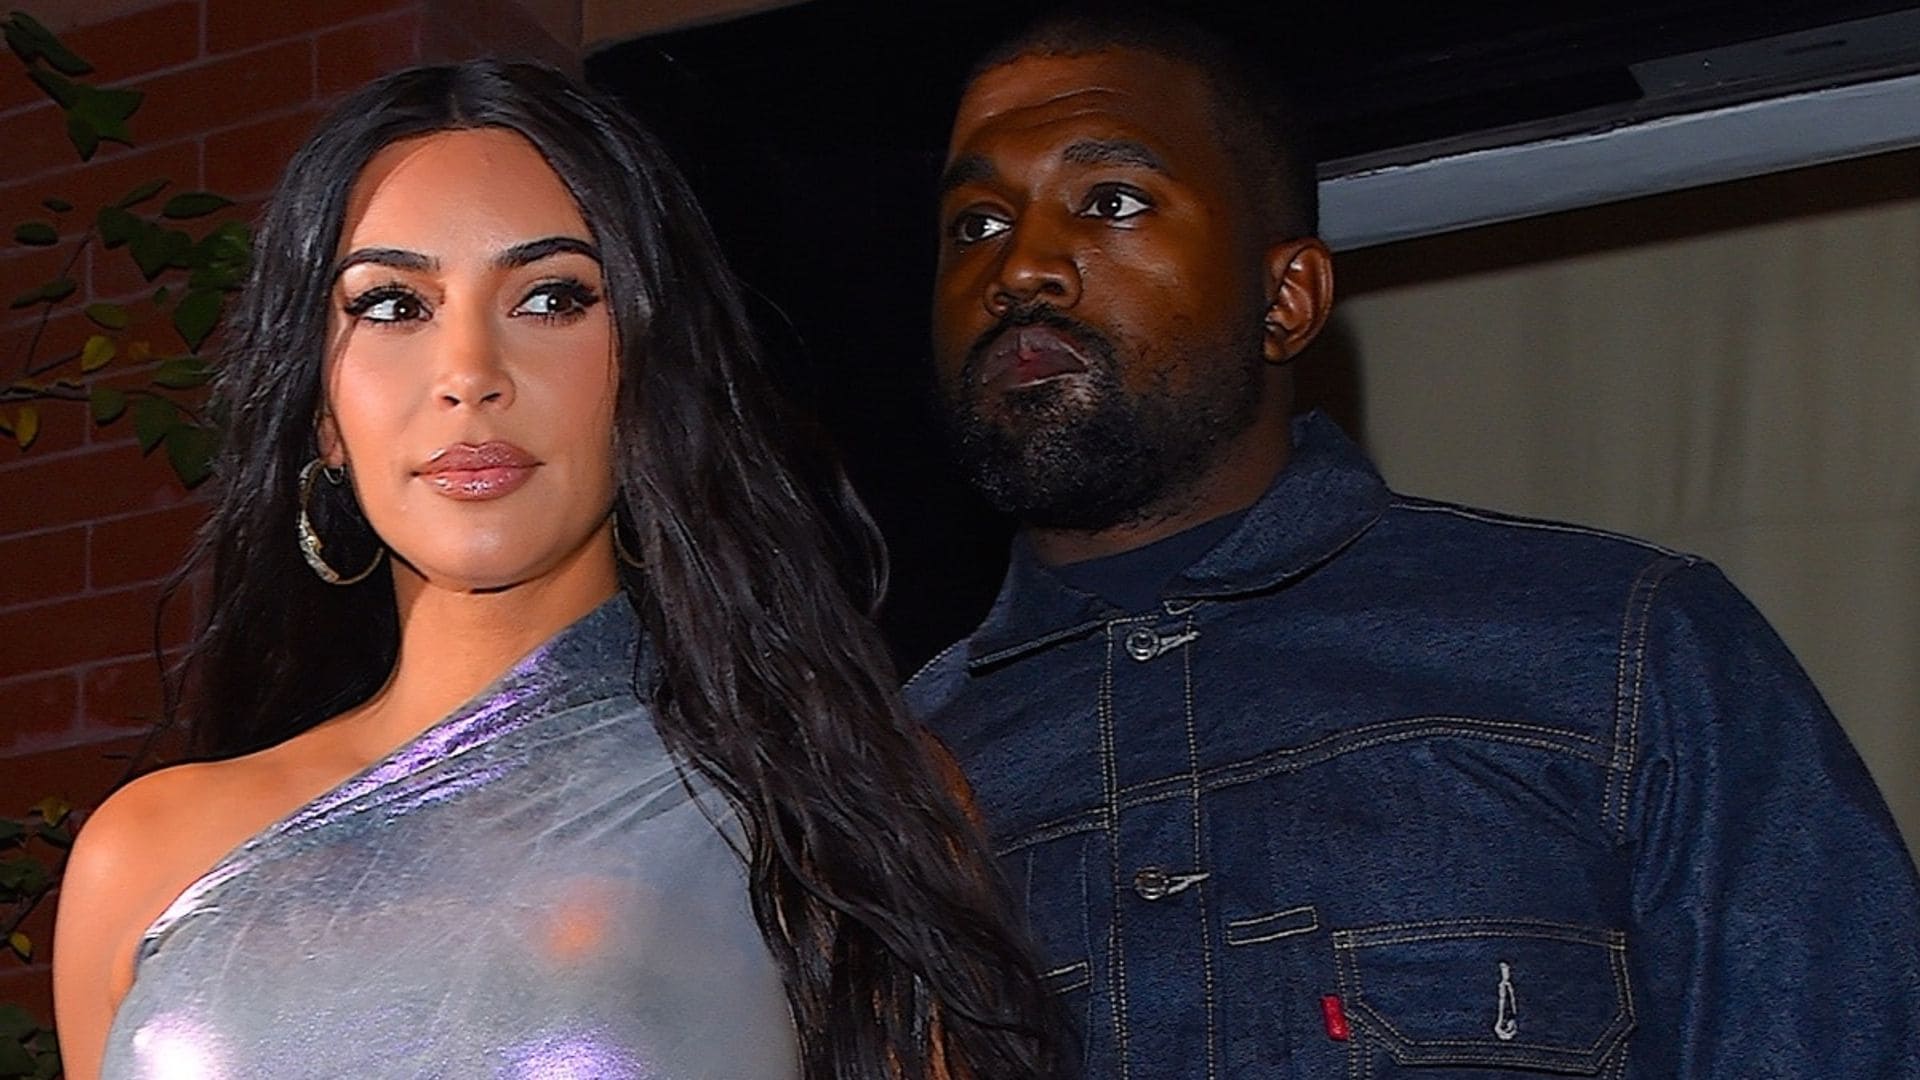 Una acusación de infidelidad, la nueva afronta entre Kim Kardashian y Kanye West